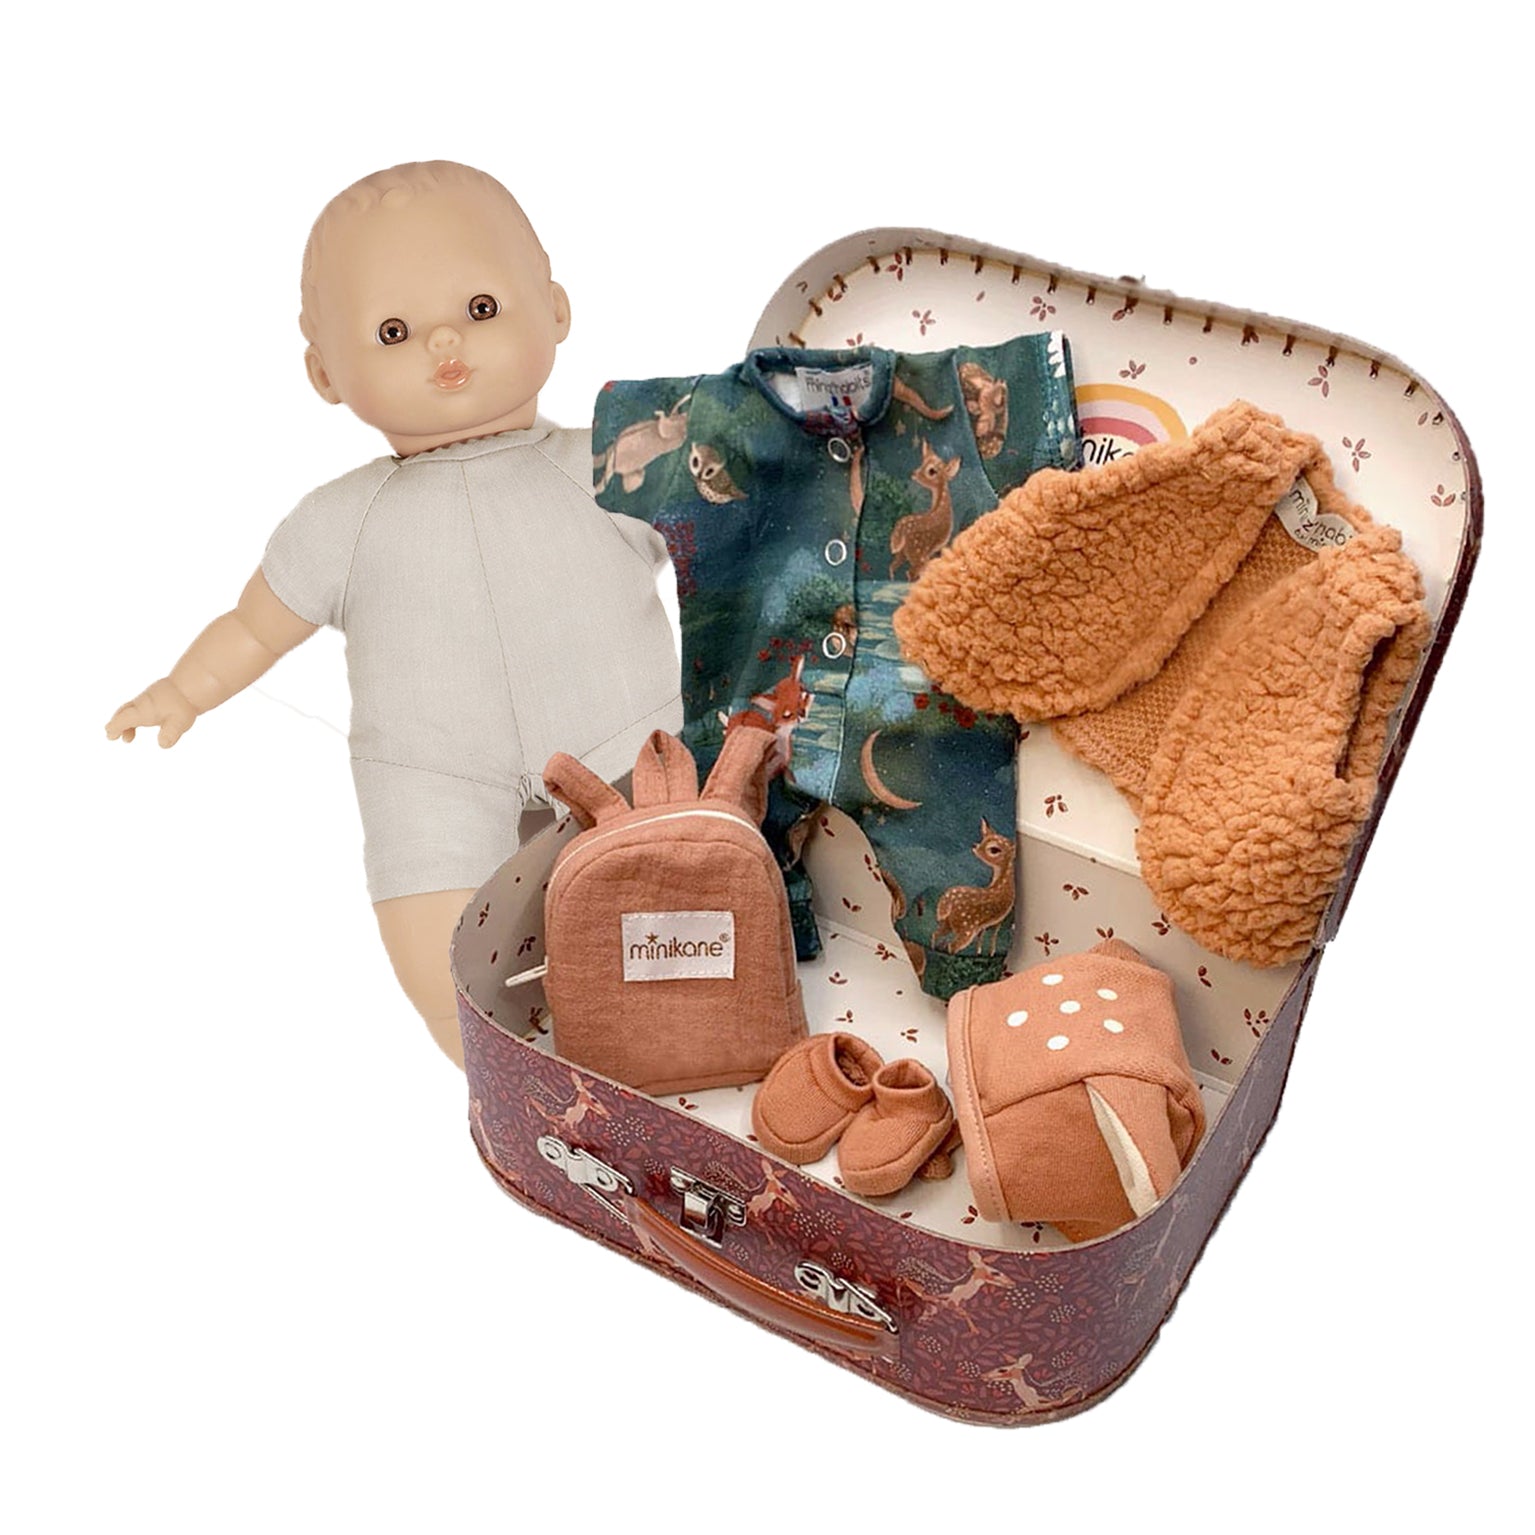 Woodland Suitcase Minikane Babies